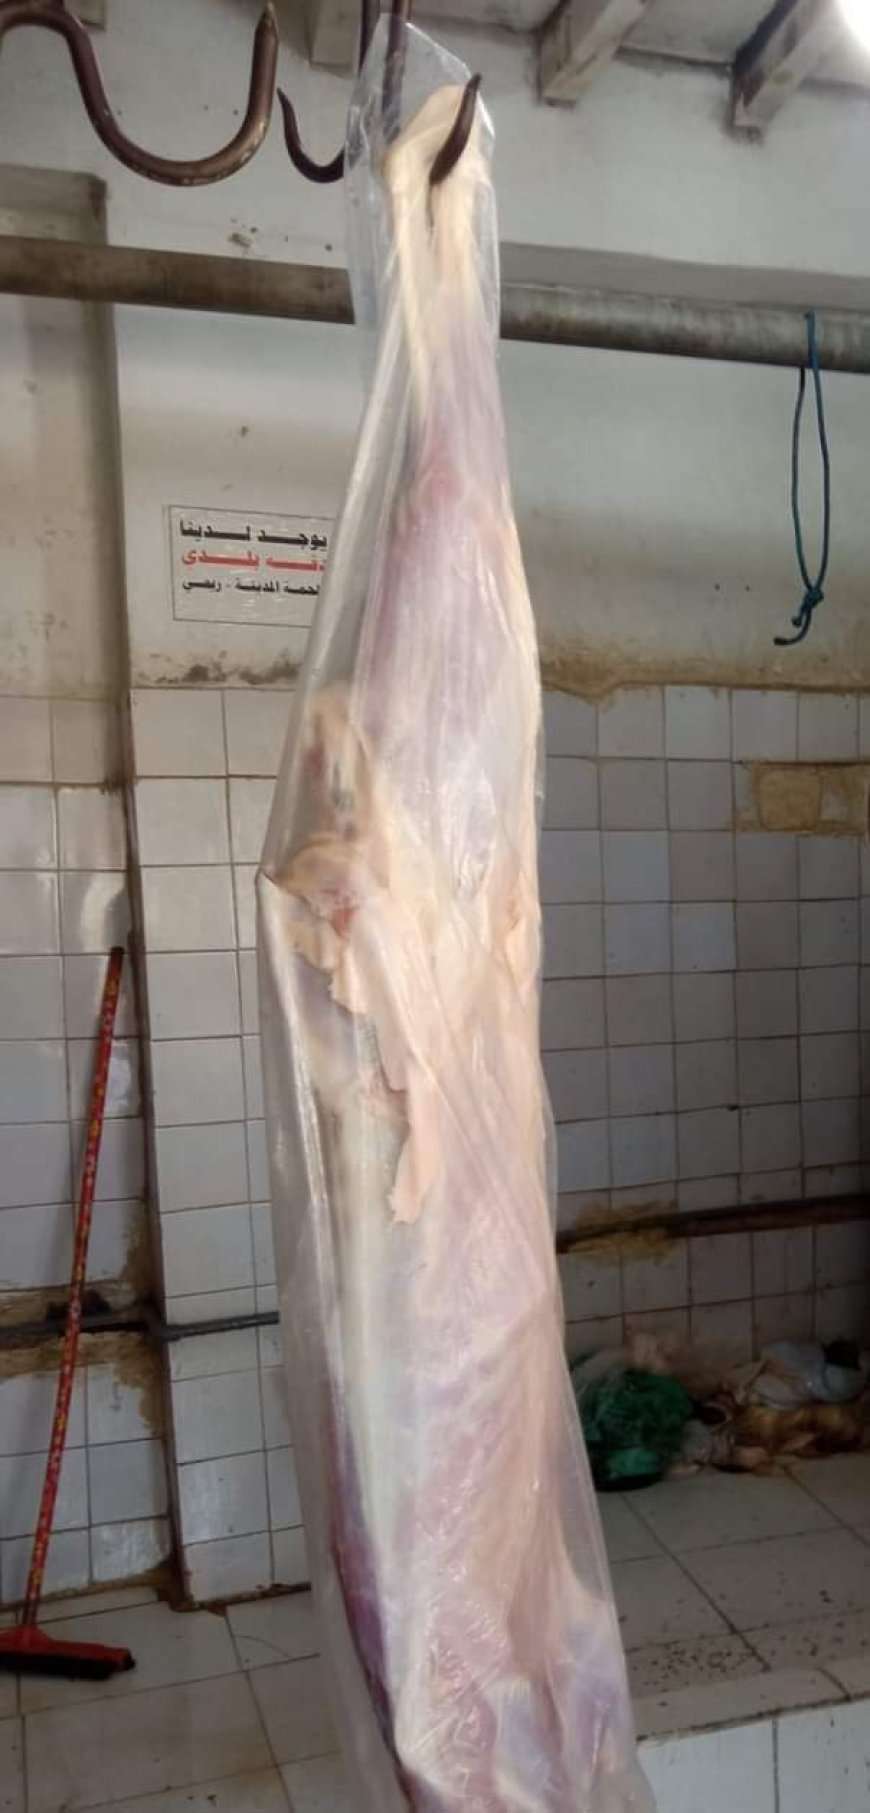 وصول سعر اللحم الى رقم قياسي في عدن